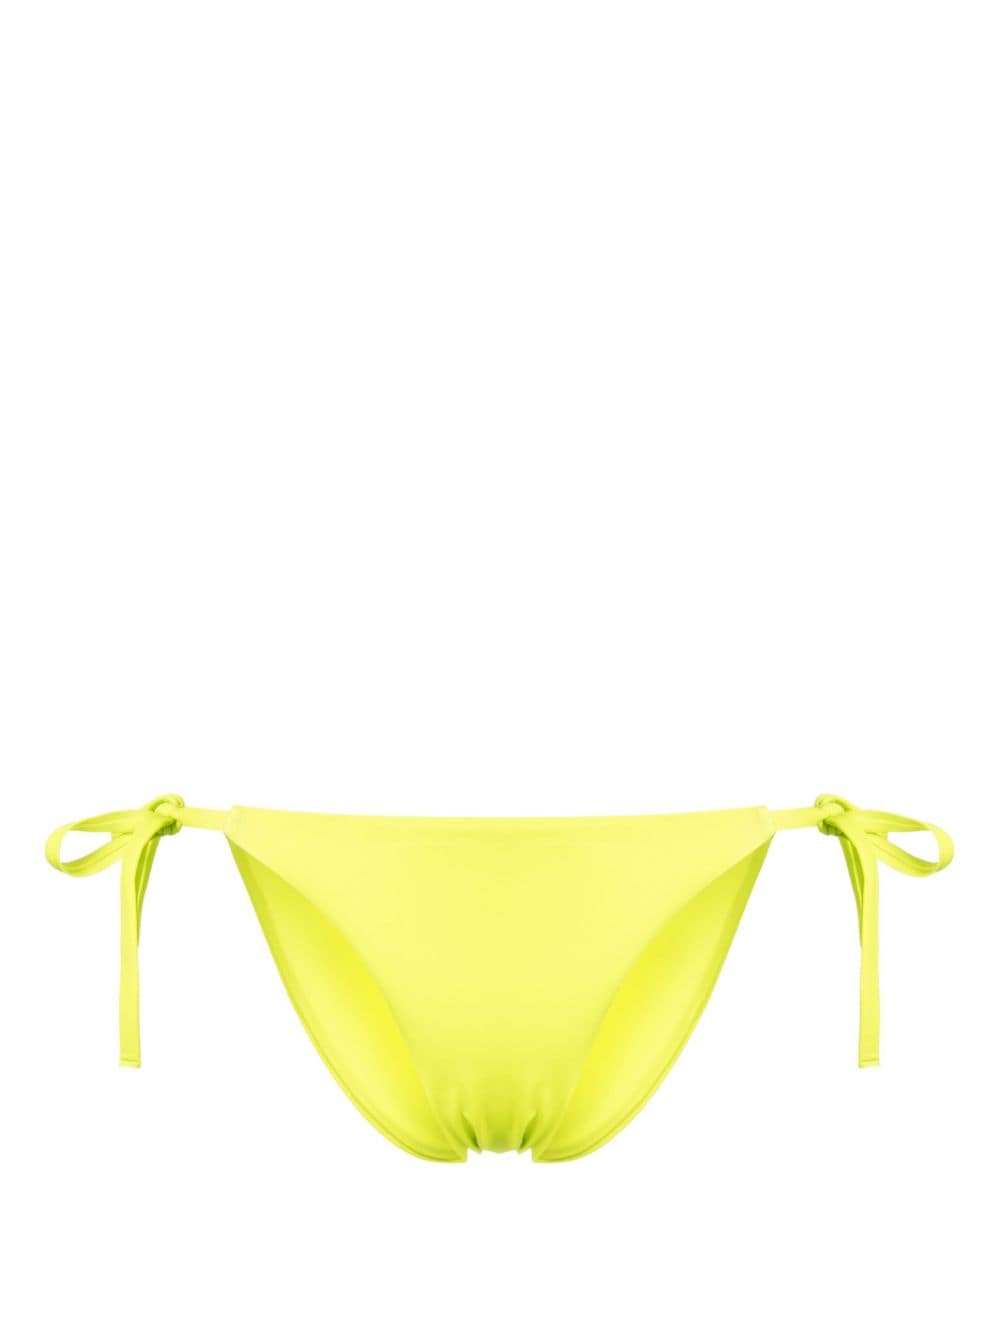 Cynthia Rowley self-tie bikini bottoms - Yellow von Cynthia Rowley